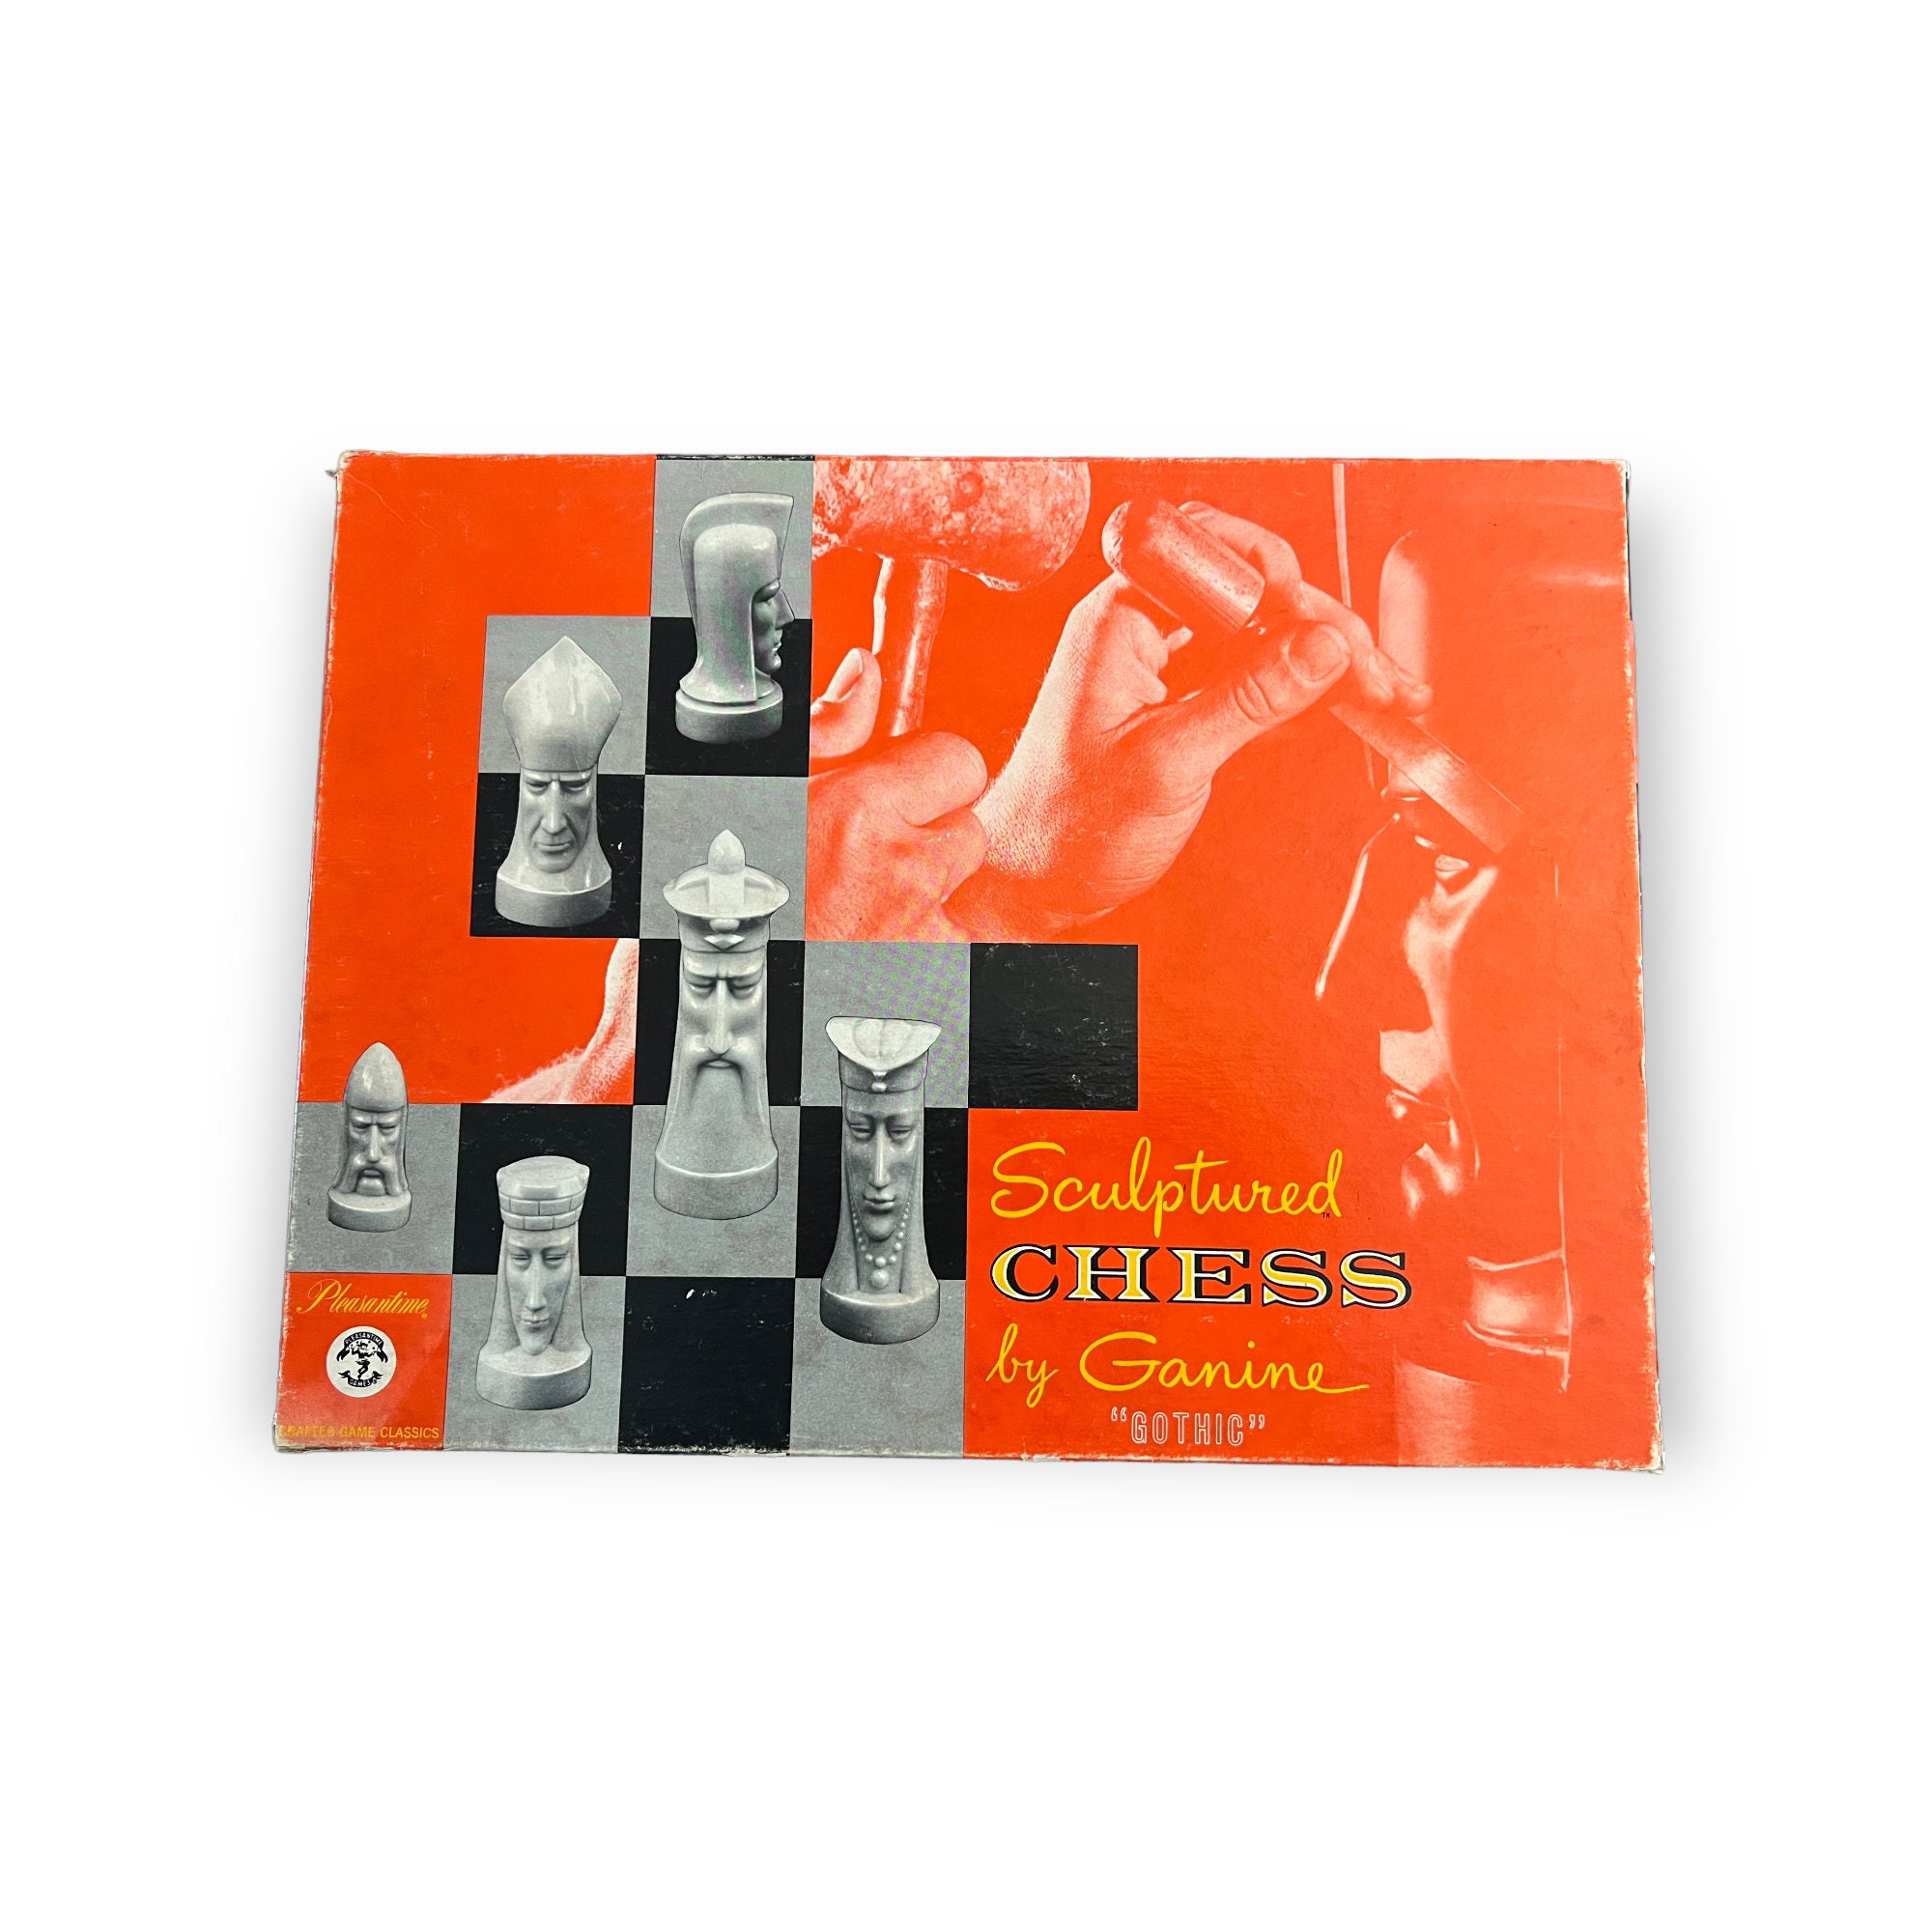 A história de 'Hyperchess', um jogo de xadrez 3D inspirado em 'Star Trek